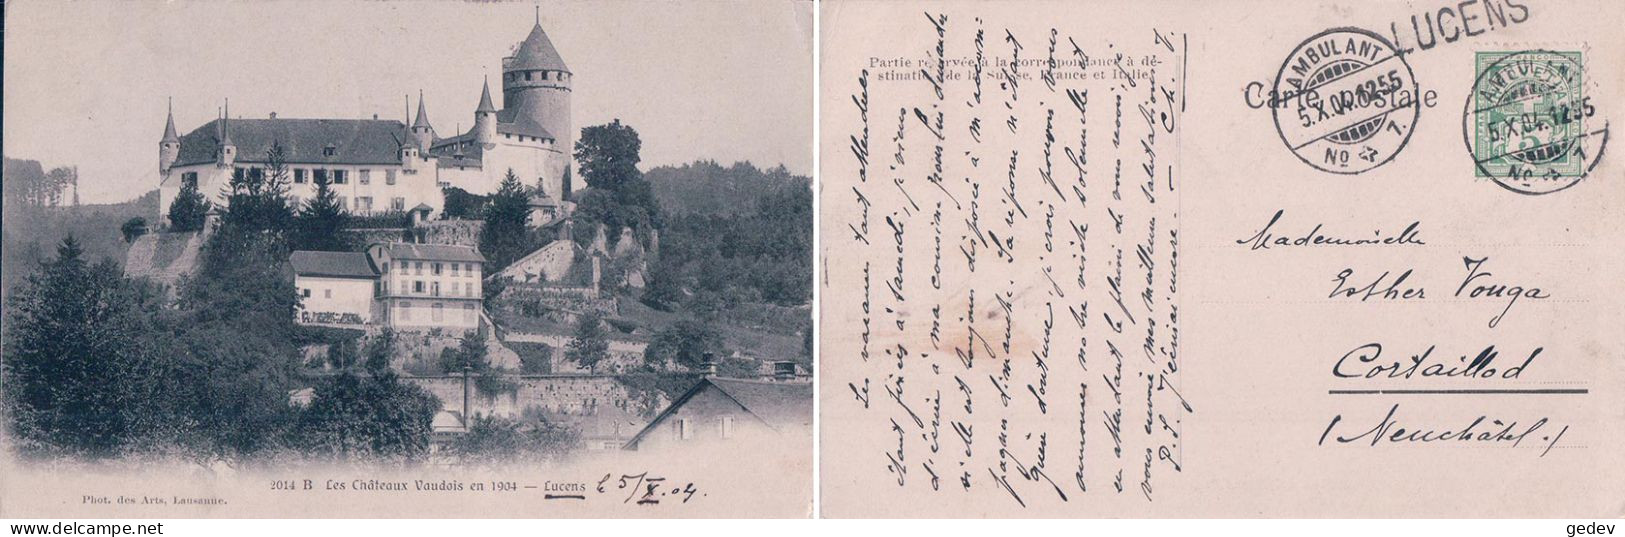 Les Châteaux Vaudois, Lucens, Cachet Linéaire LUCENS (5.10.1904) - Lucens